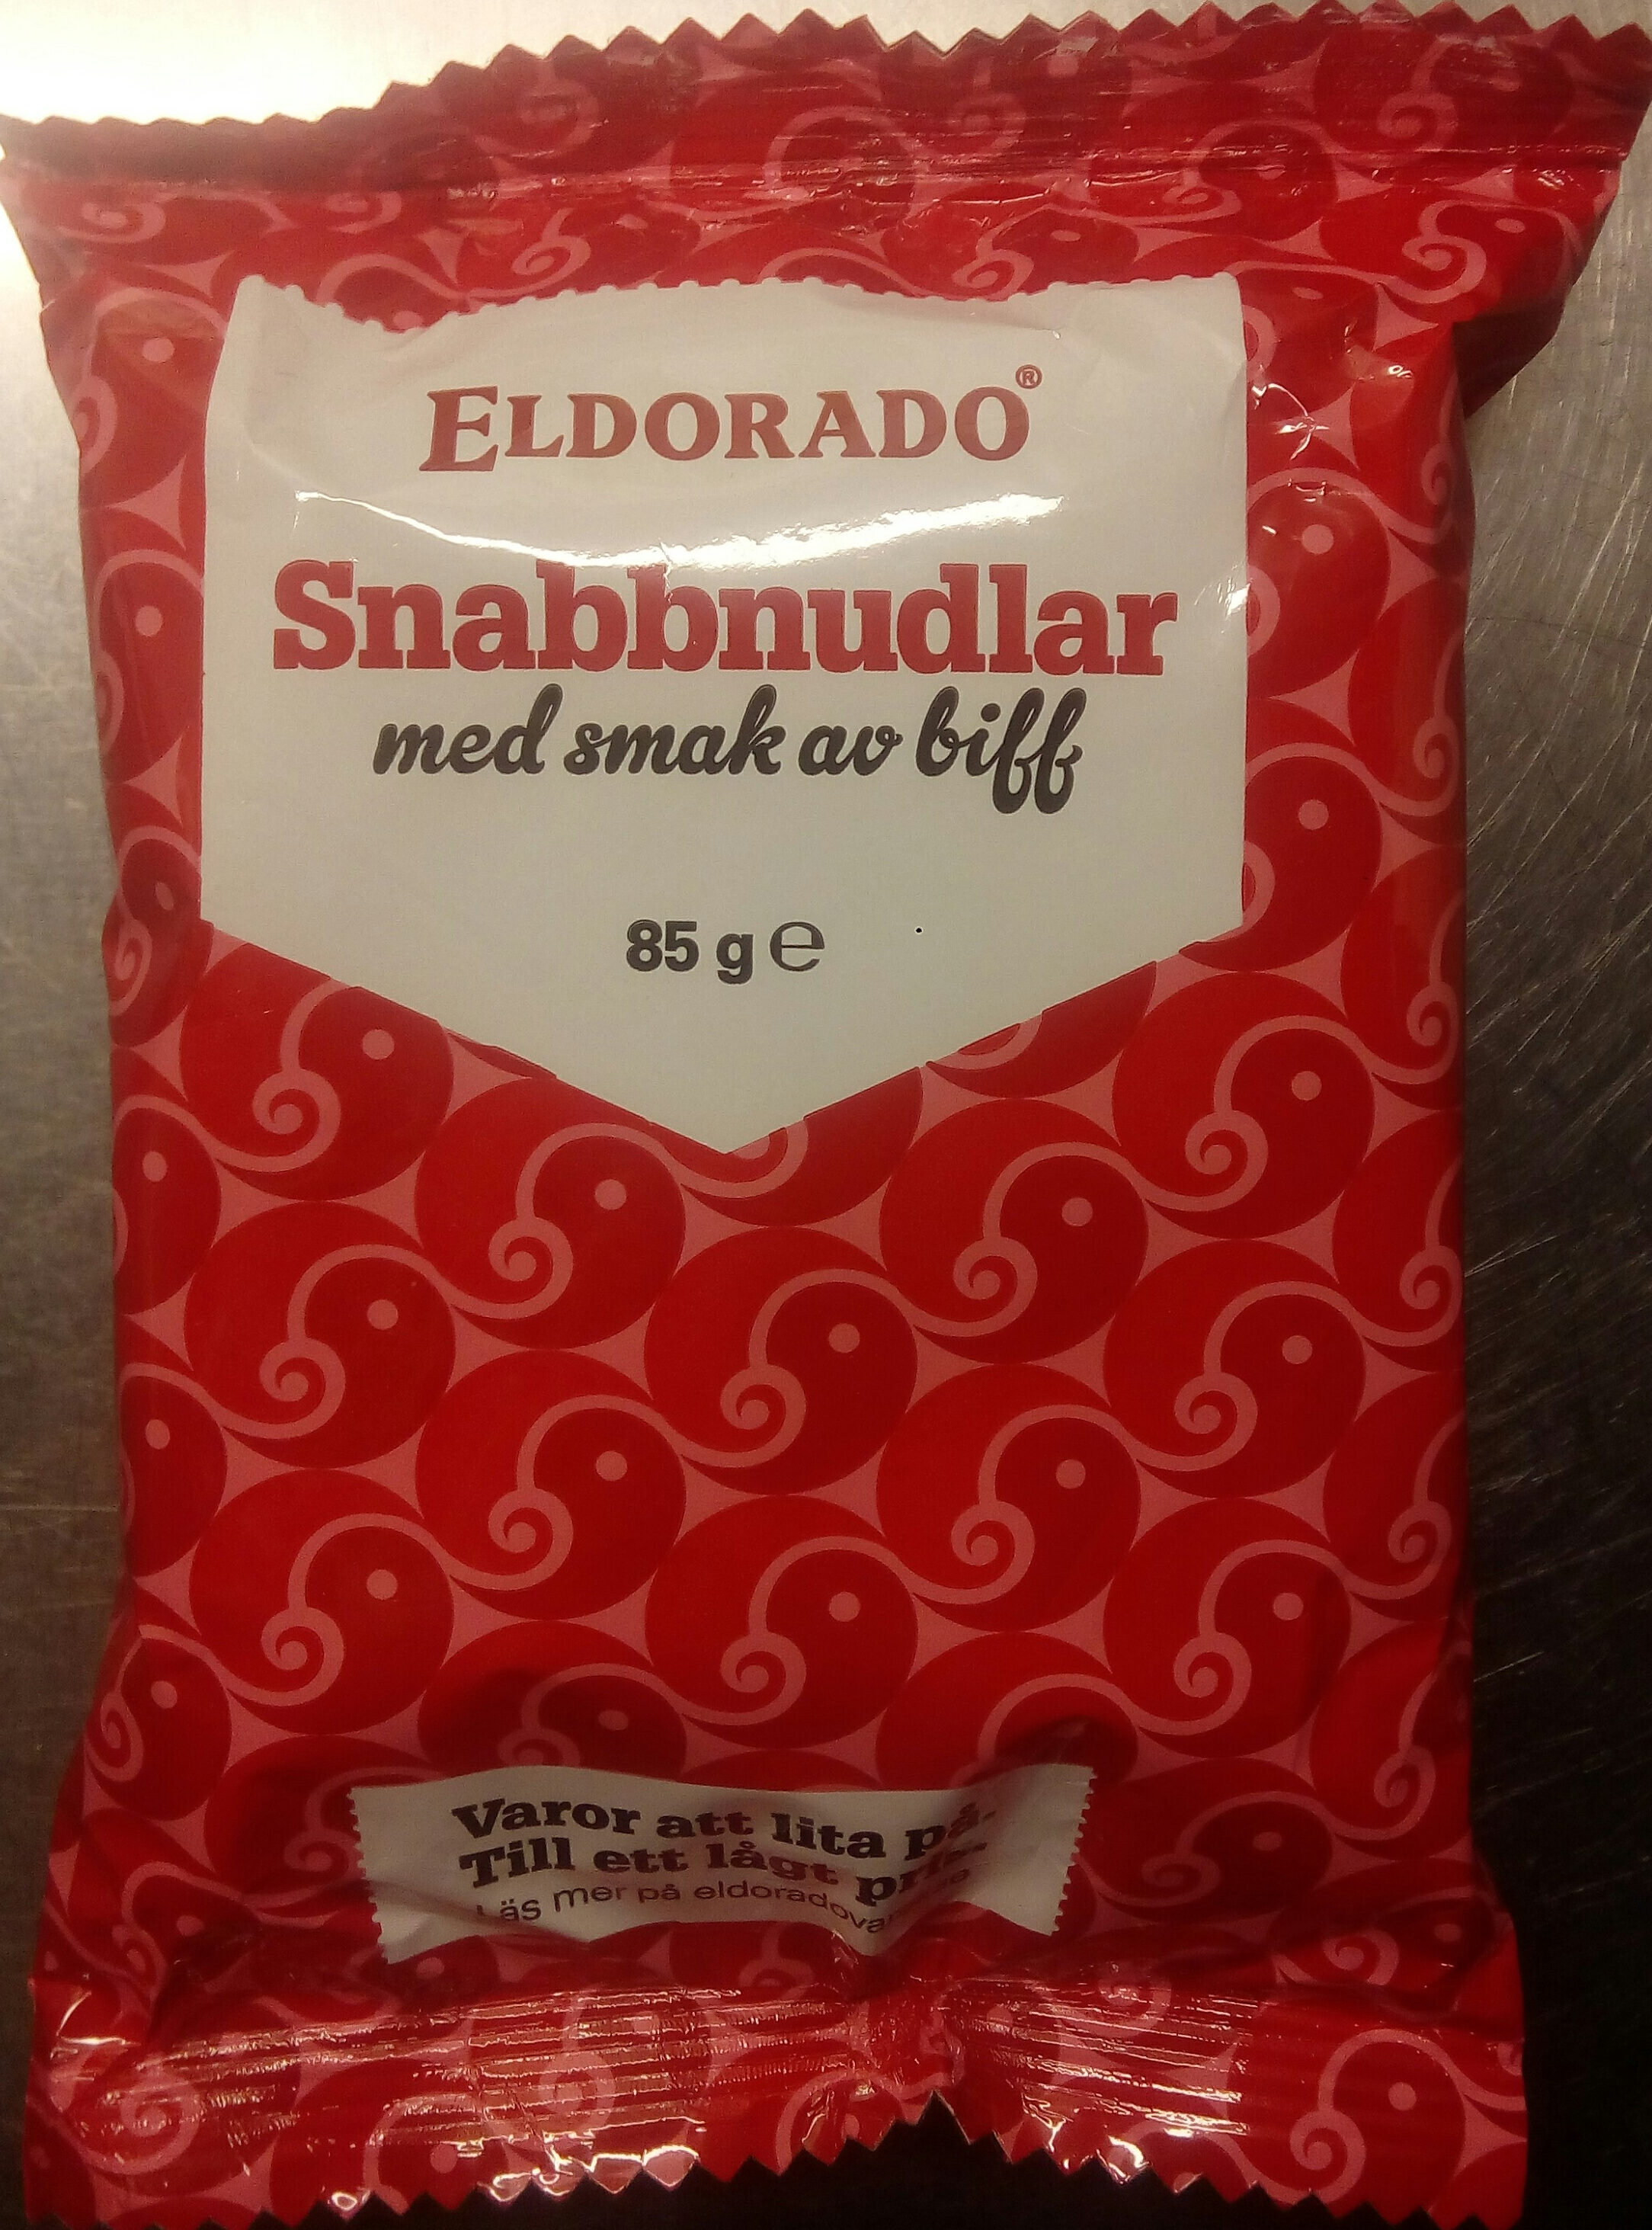 Eldorado Snabbnudlar med smak av biff - Produkt - sv